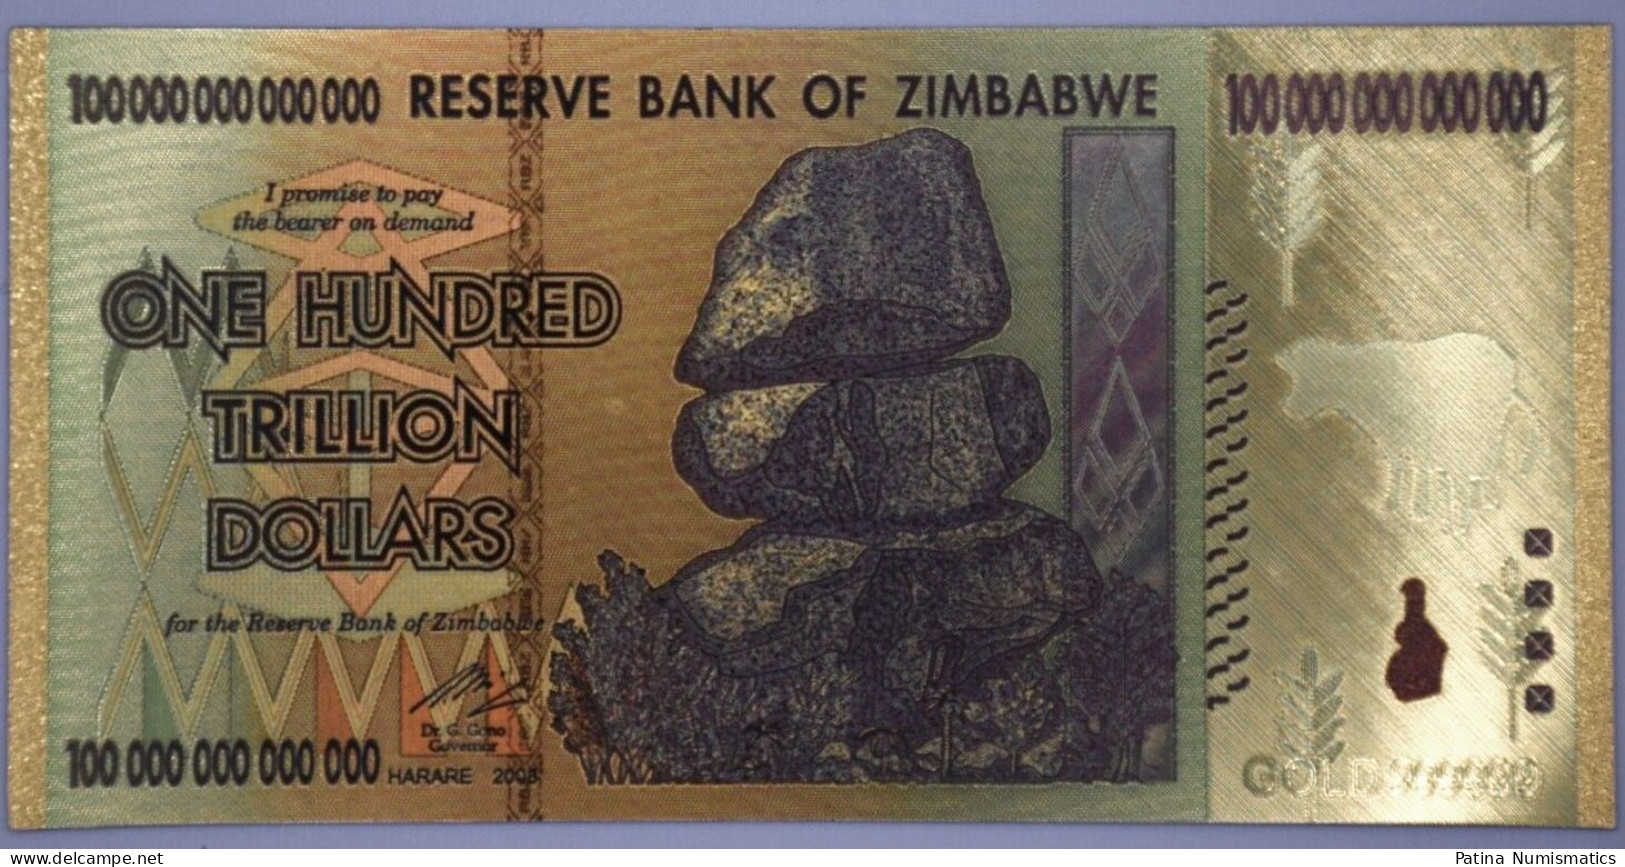 Zimbabwe $100 100 Trillion Dollars Gold Banknote Money Collection Novelty - Zimbabwe